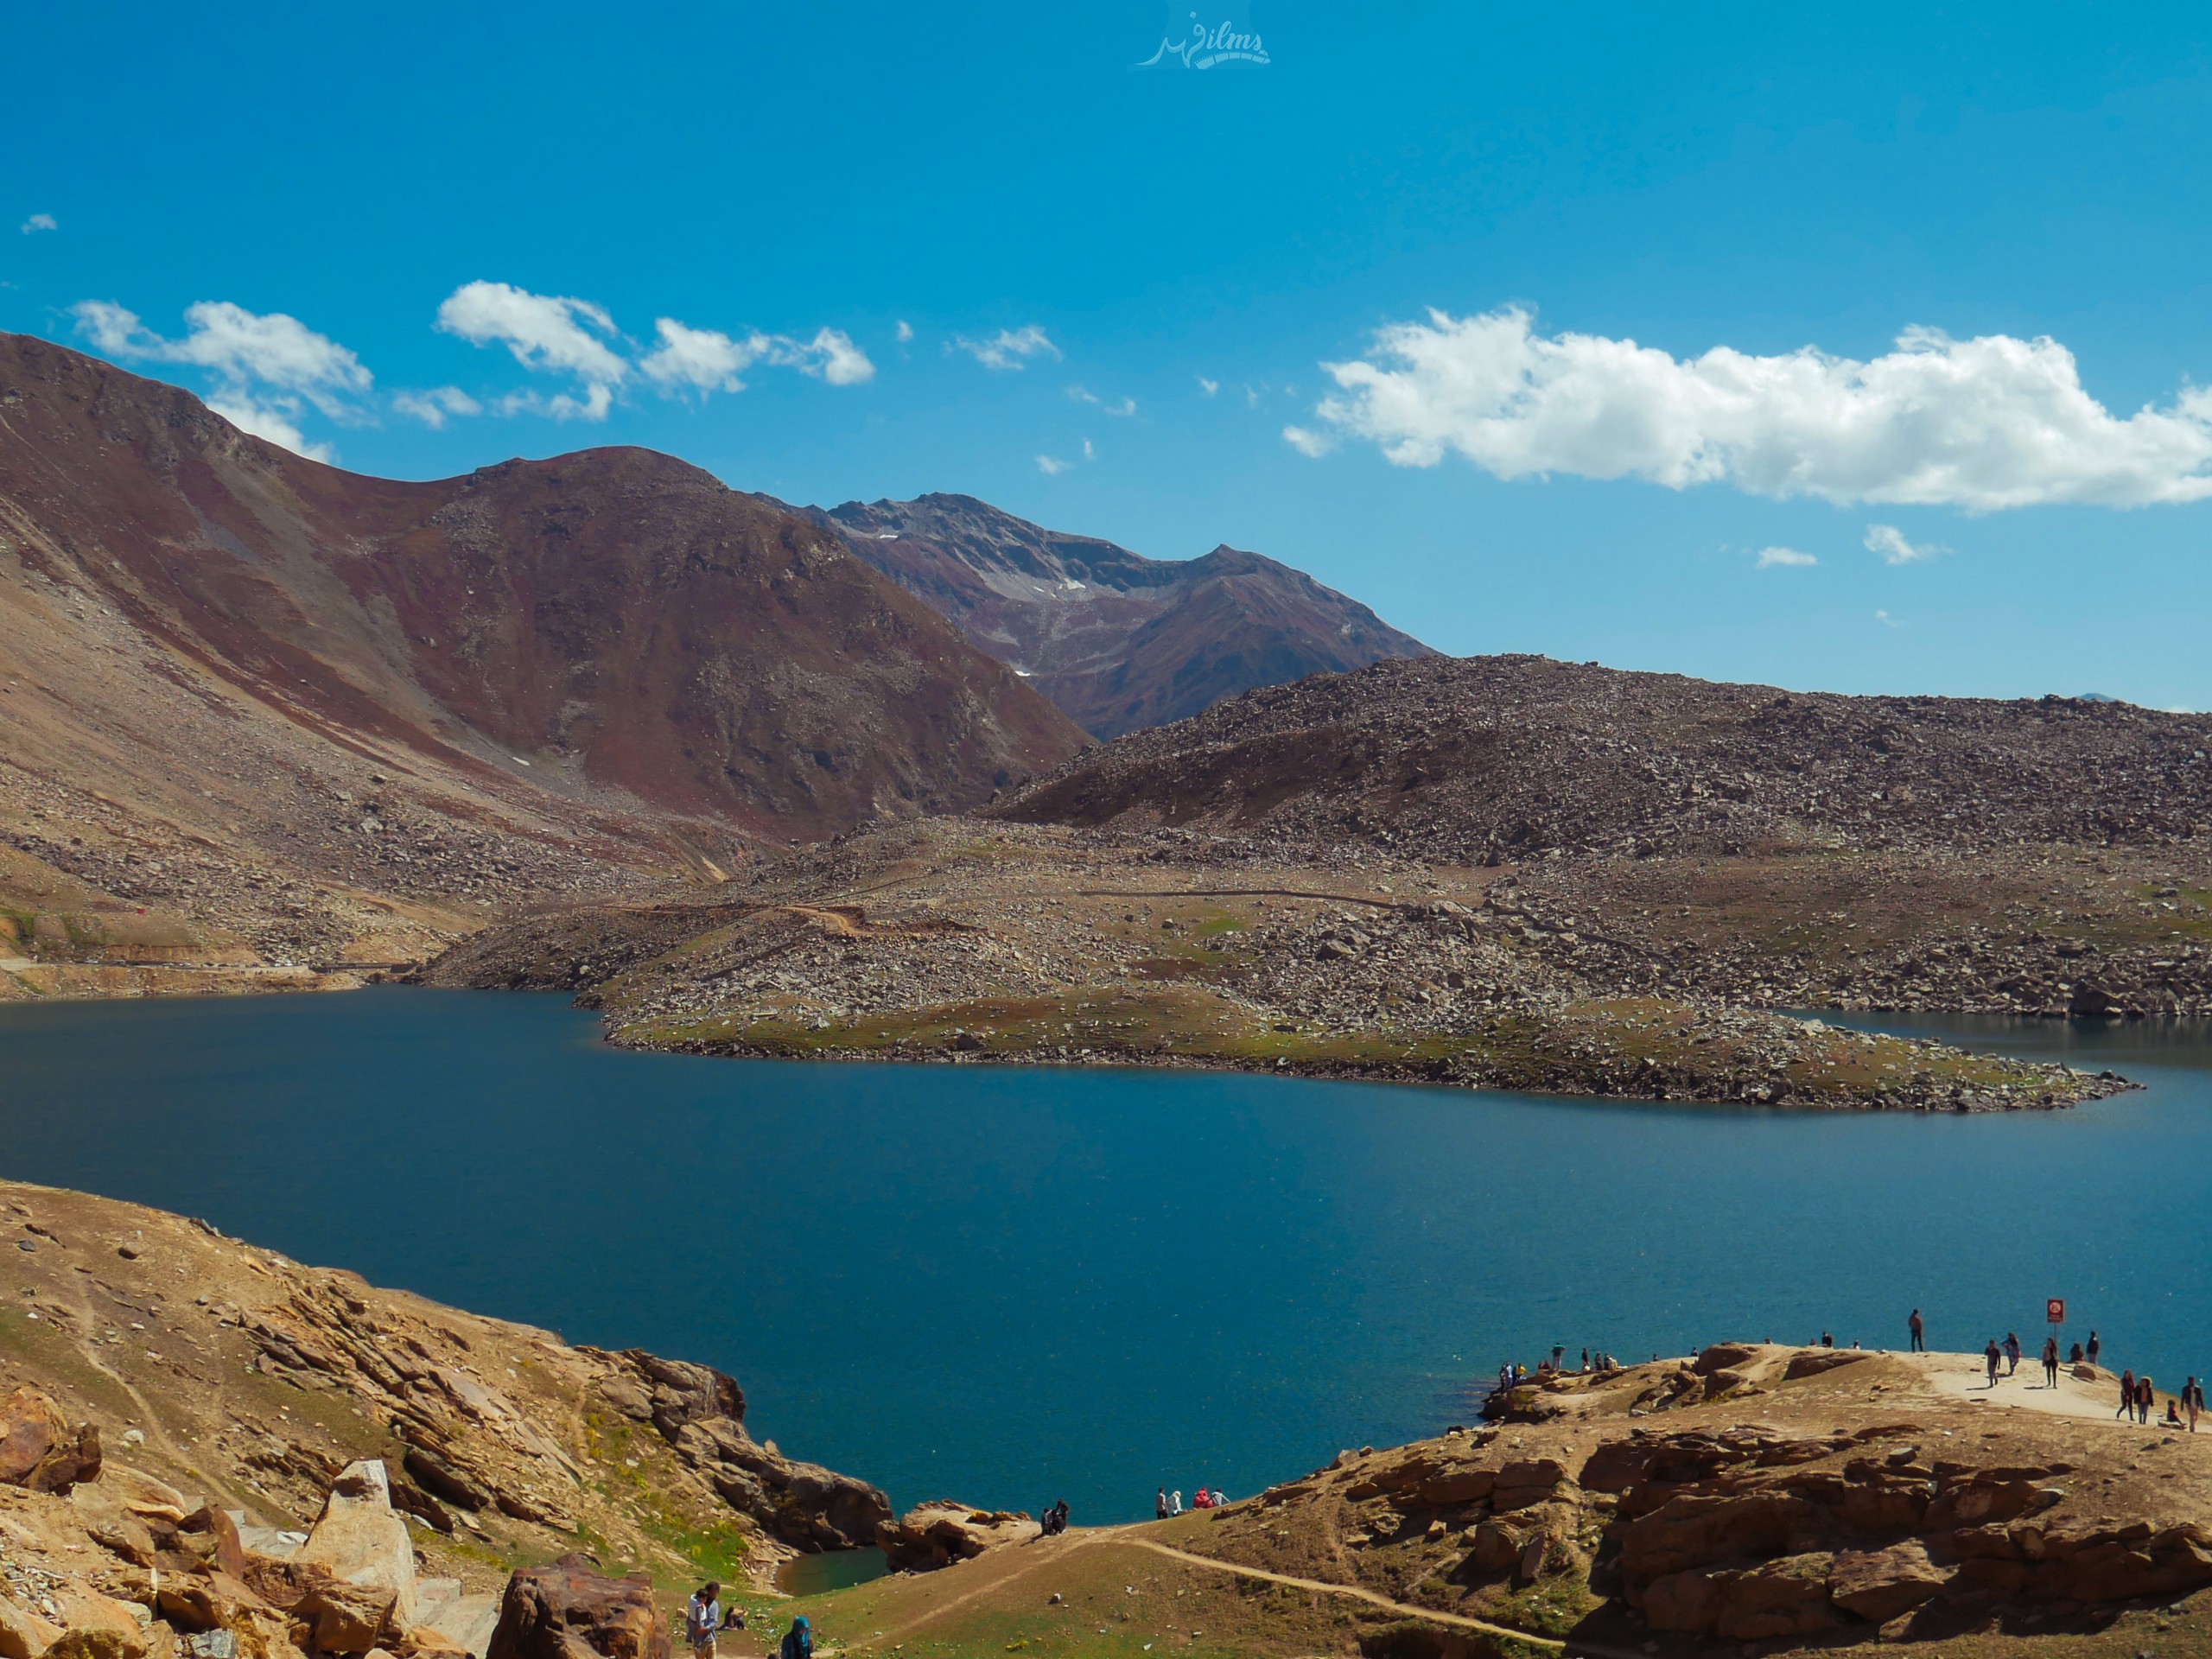 Lake in Himalaya region in Pakistan